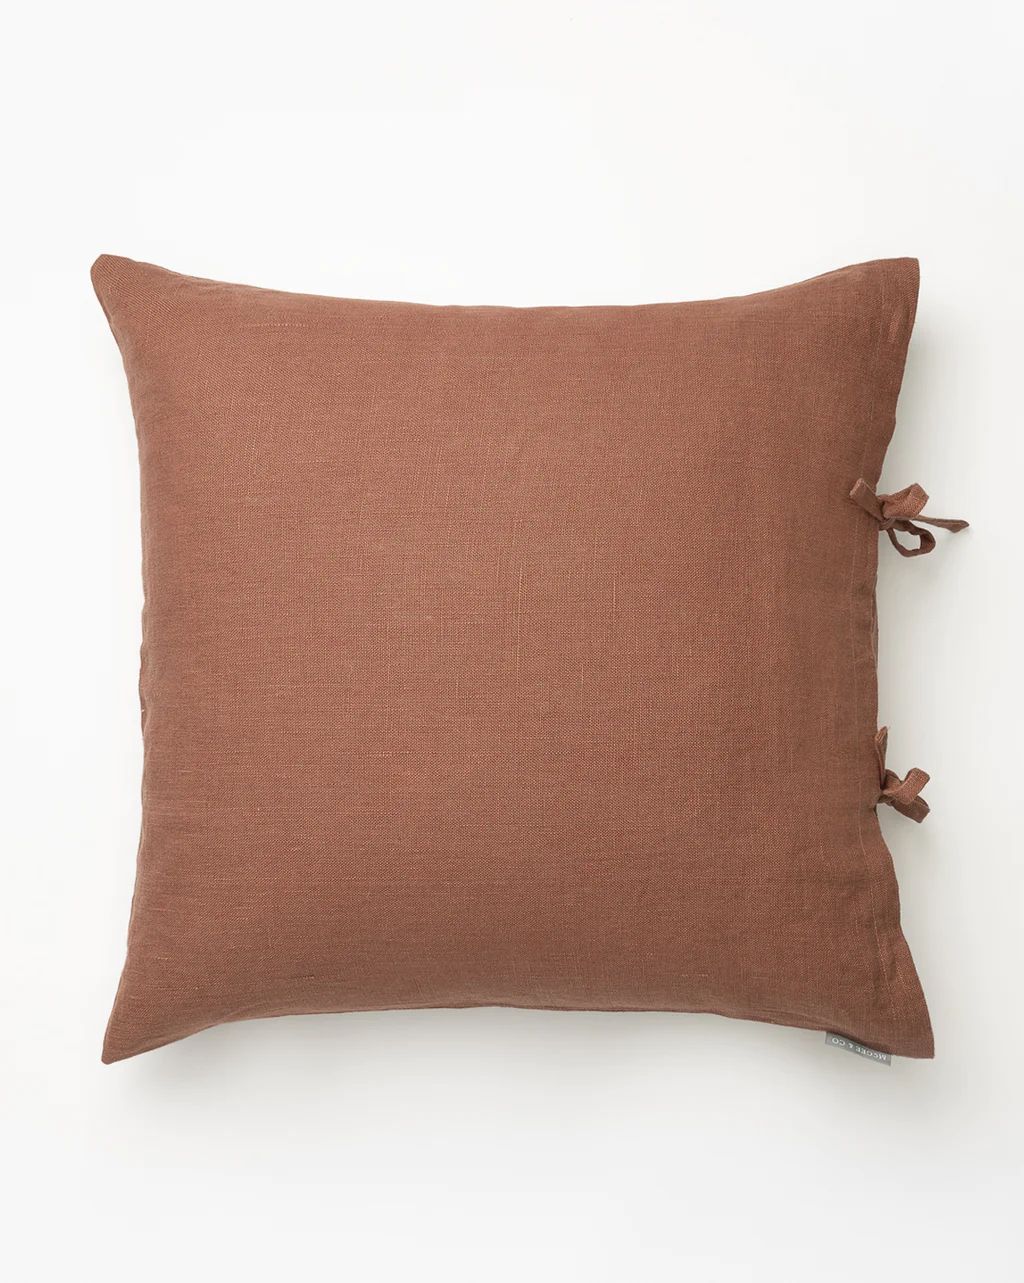 Kara Linen Pillow Cover | McGee & Co.